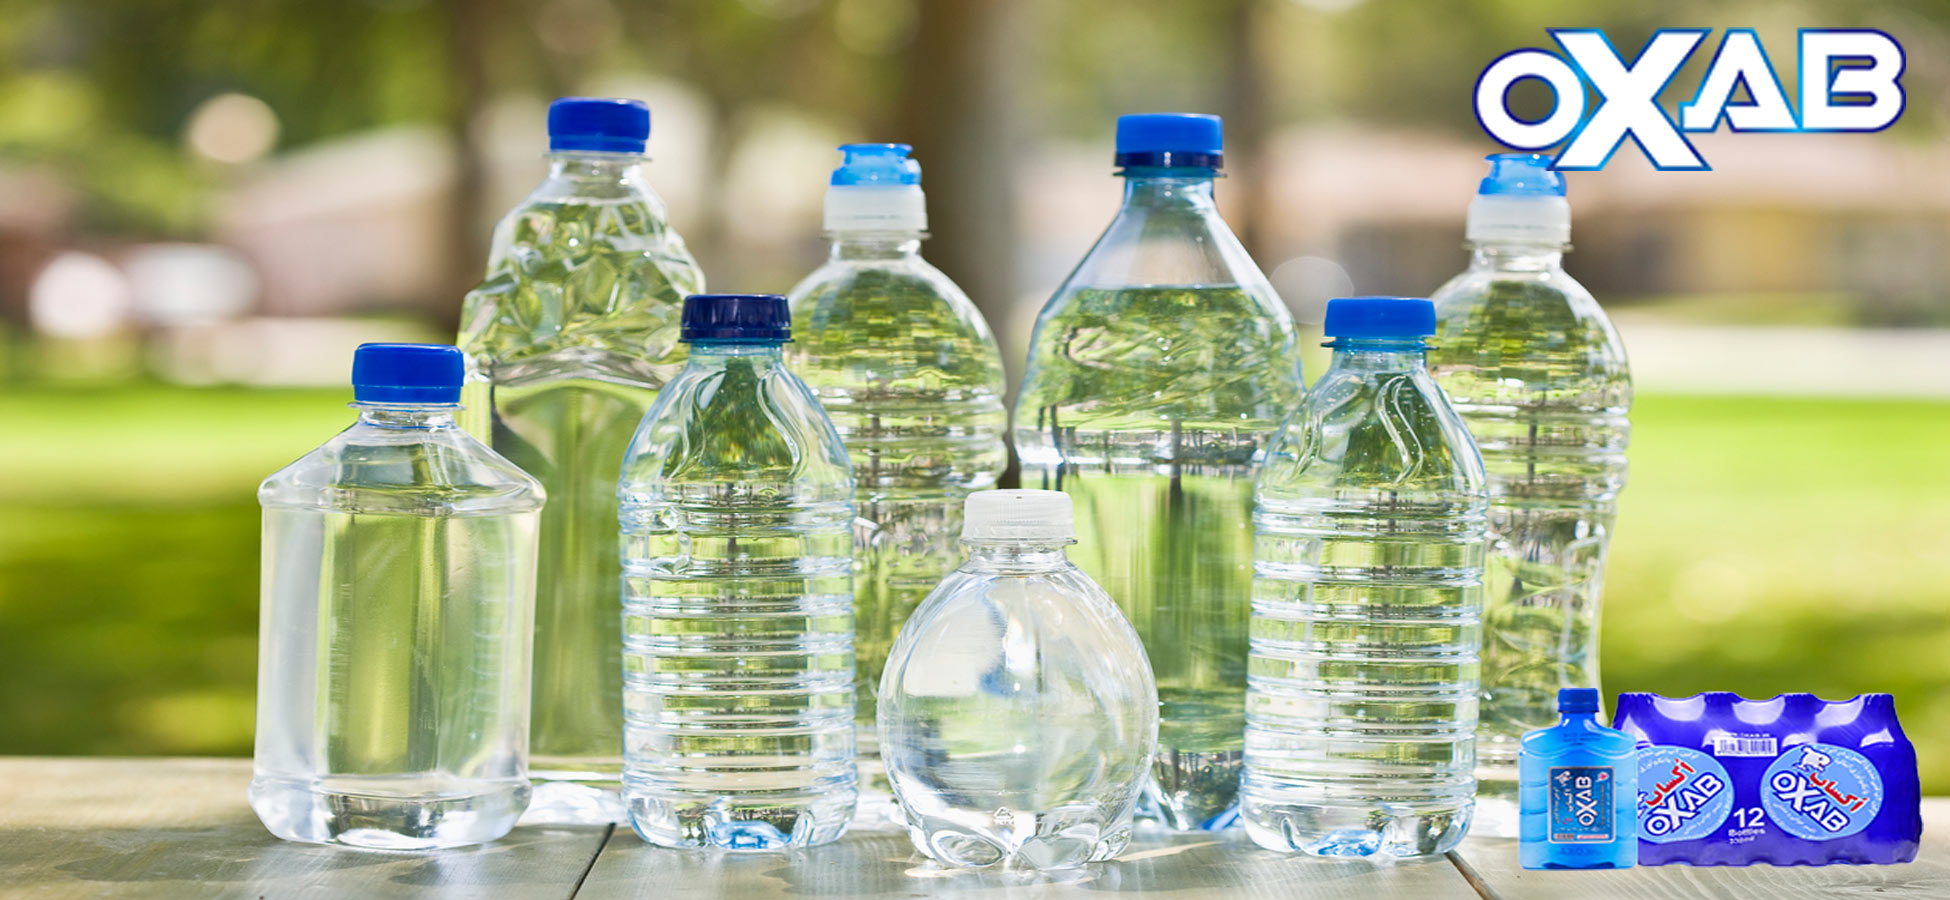 آیا آب بطری شده خراب می شود؟ چرا آب تاریخ انقضا دارد؟